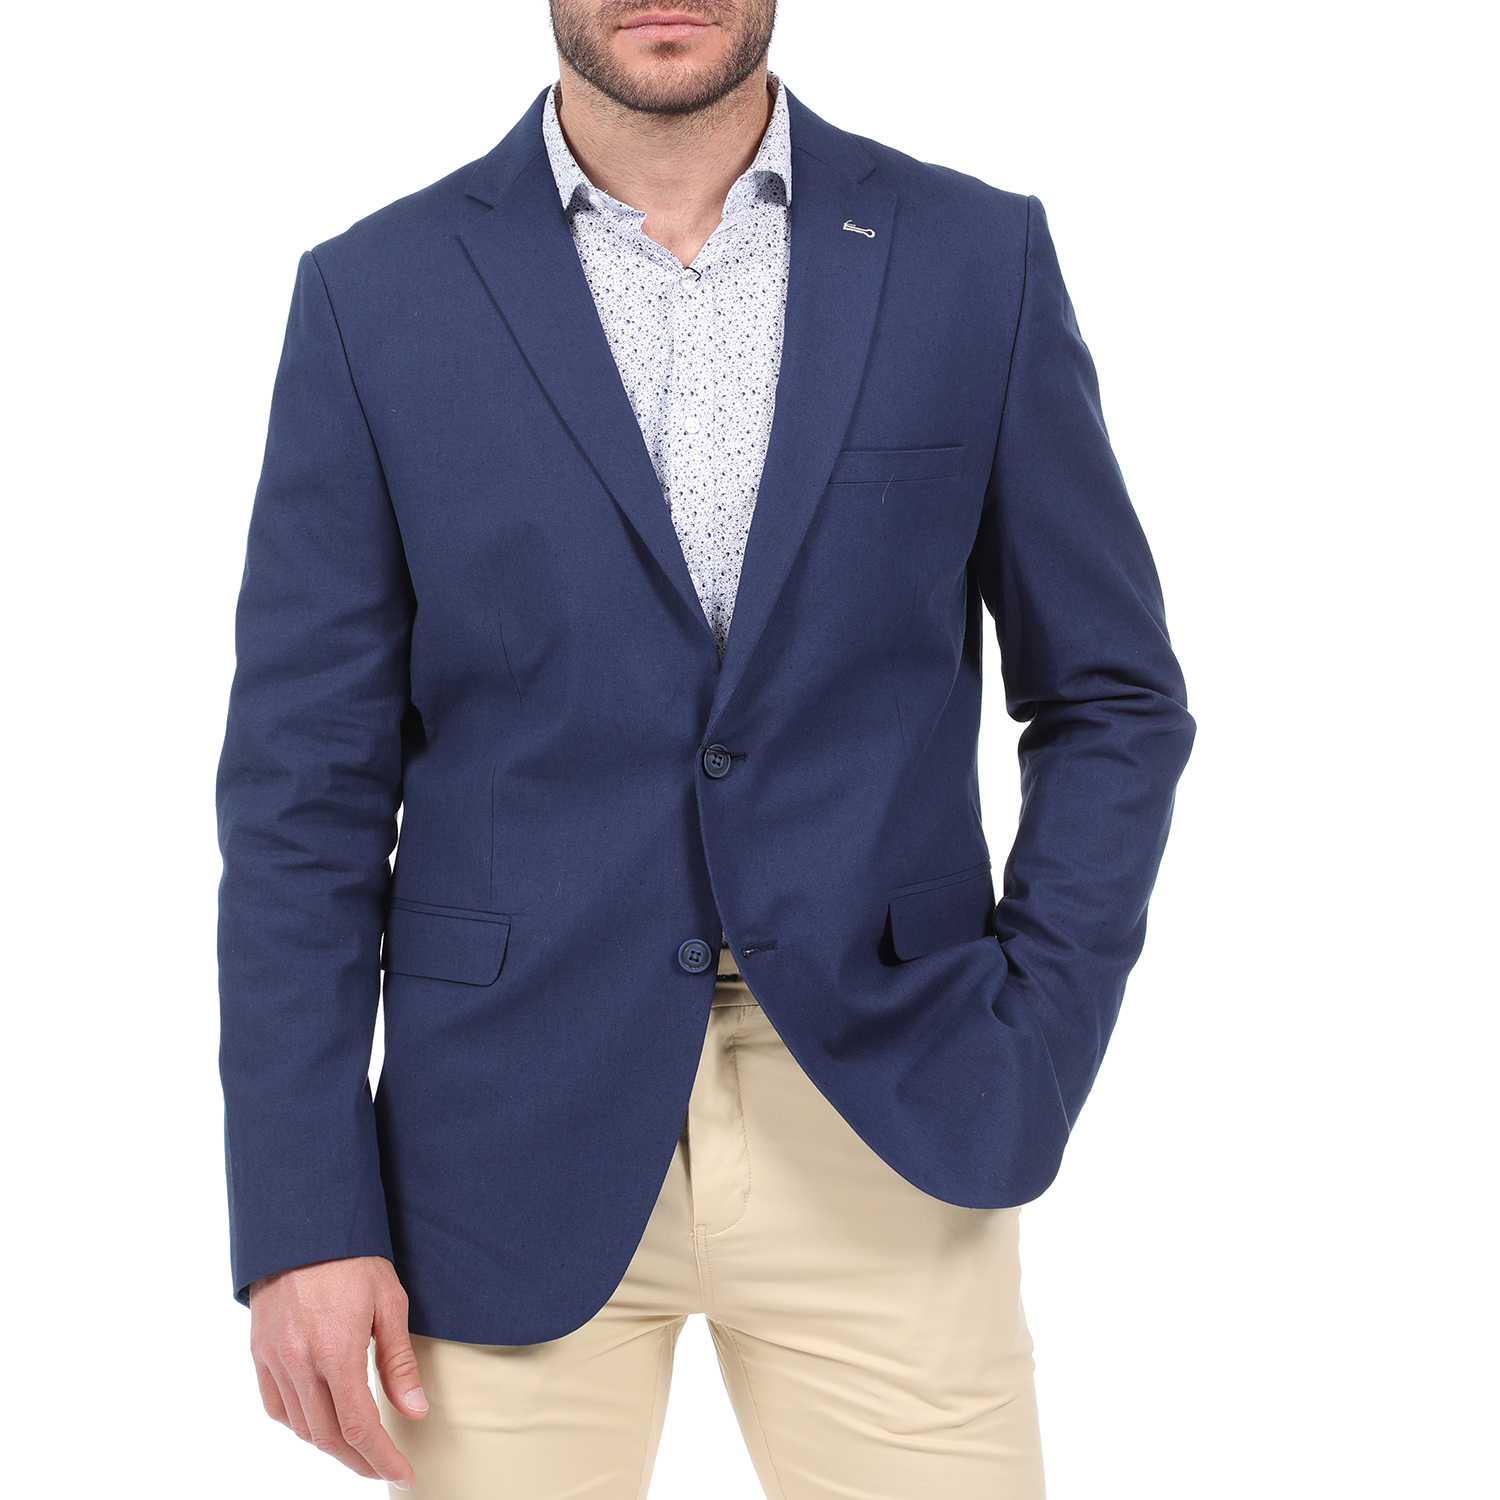 Ανδρικά/Ρούχα/Πανωφόρια/Σακάκια DORS - Ανδρικό σακάκι DORS μπλε